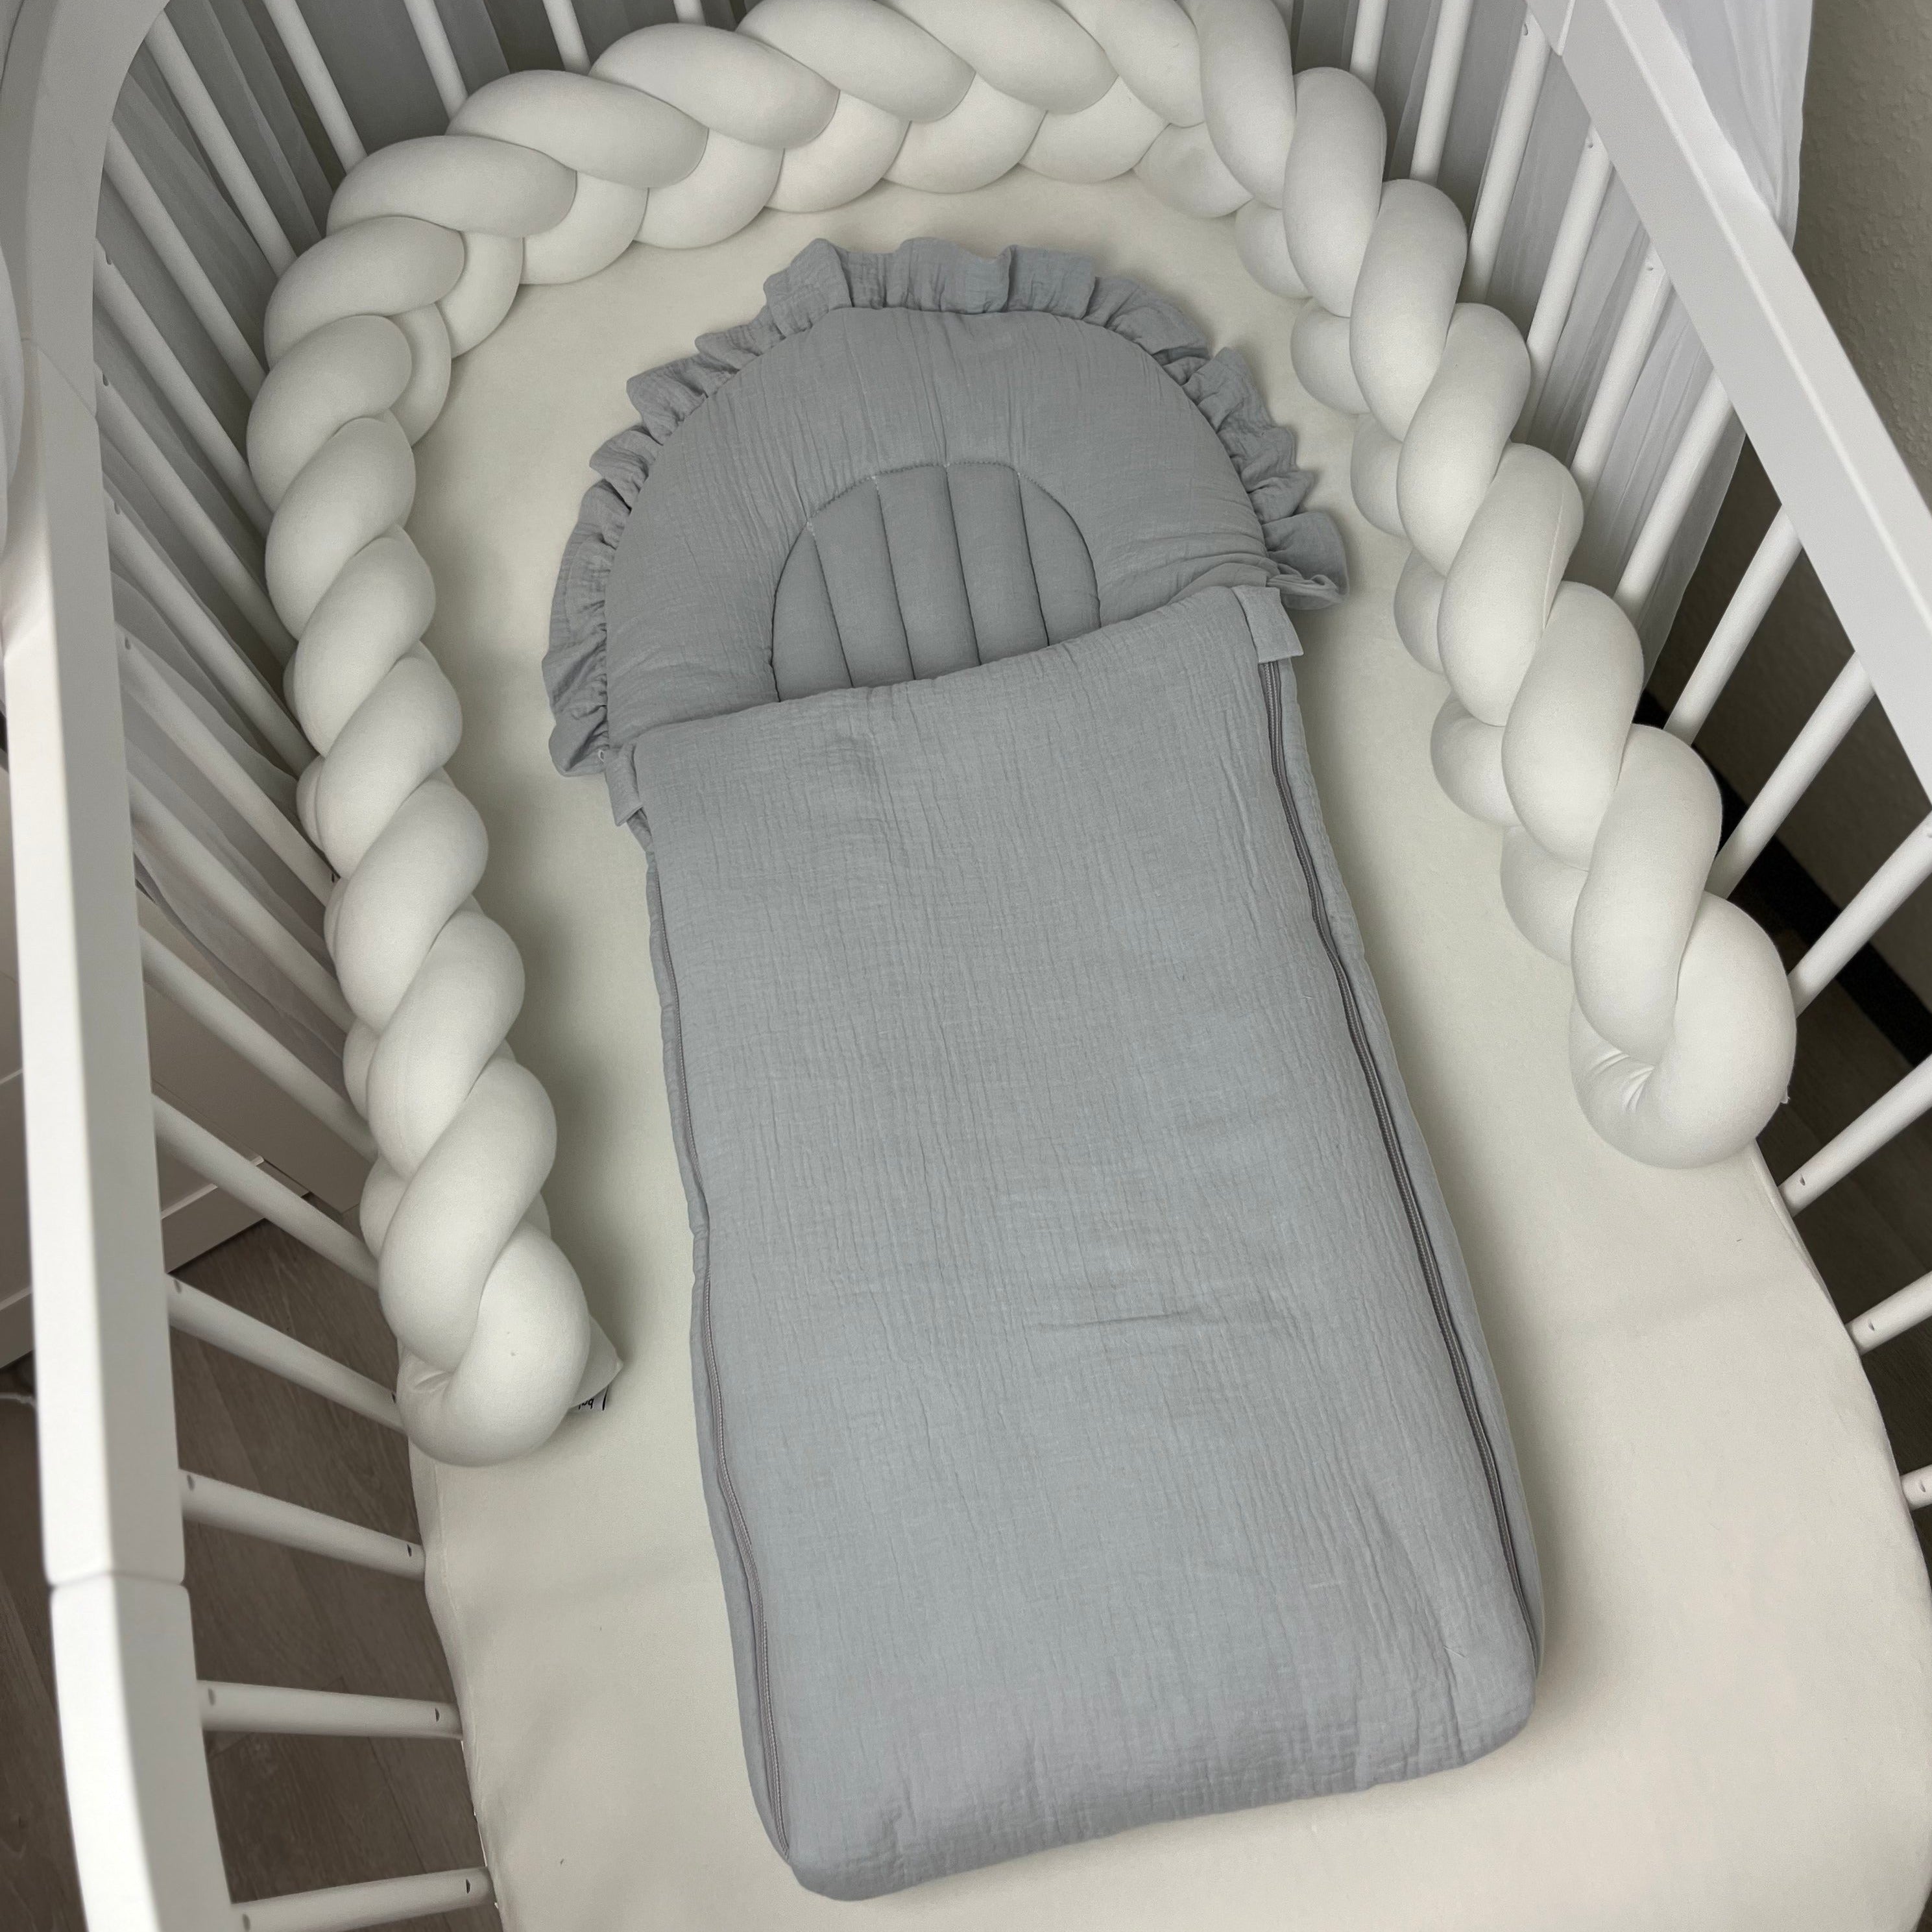 Flacher Babyschlafsack mit Wellenschnitt & Rüschen | Musselin | Light Grey Gr. XL